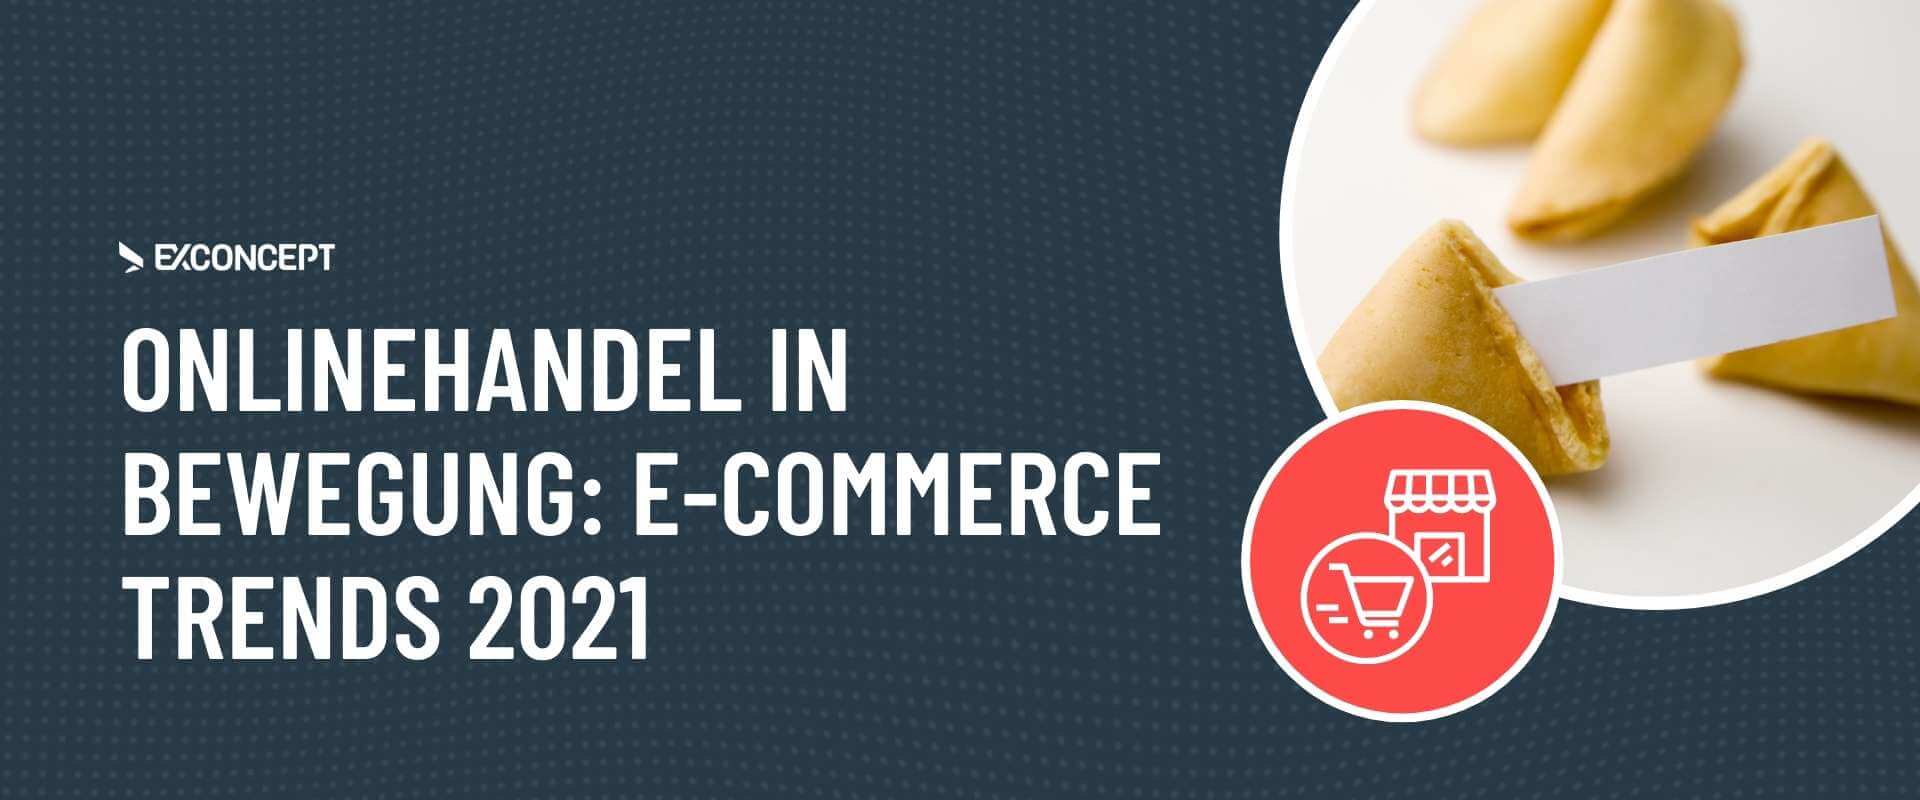 E-Commerce-Trends 2021 Header